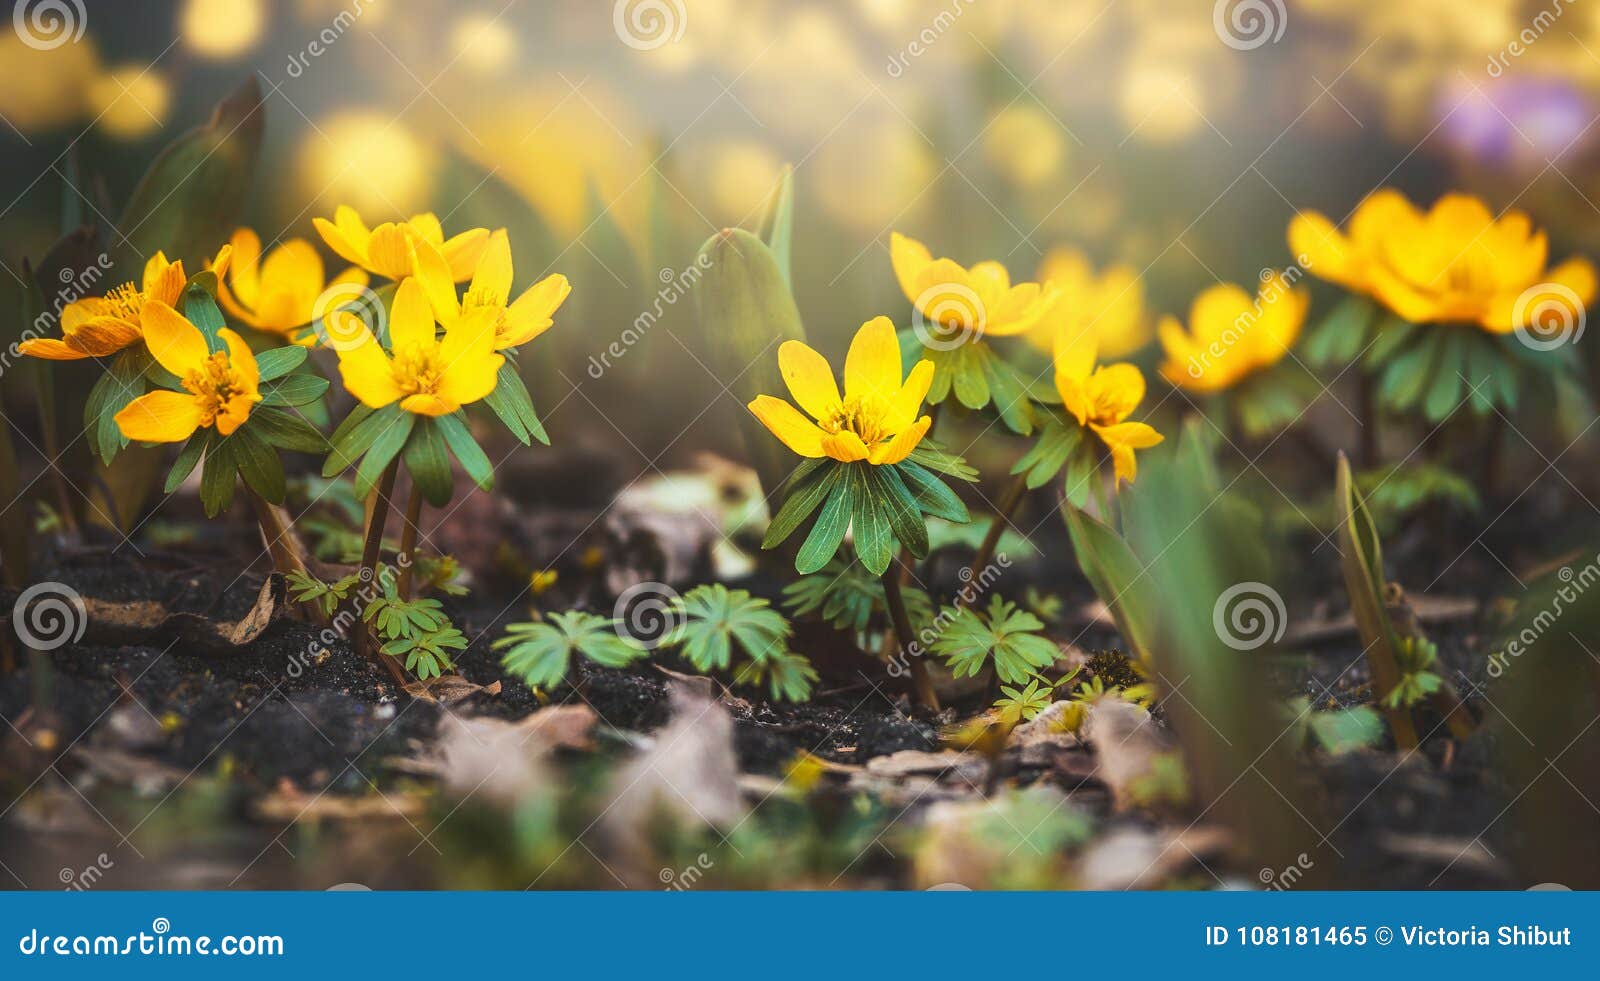 Fleurs Jaunes Sauvages De Renoncule, Printemps Image stock - Image du  jardin, adapté: 108181465